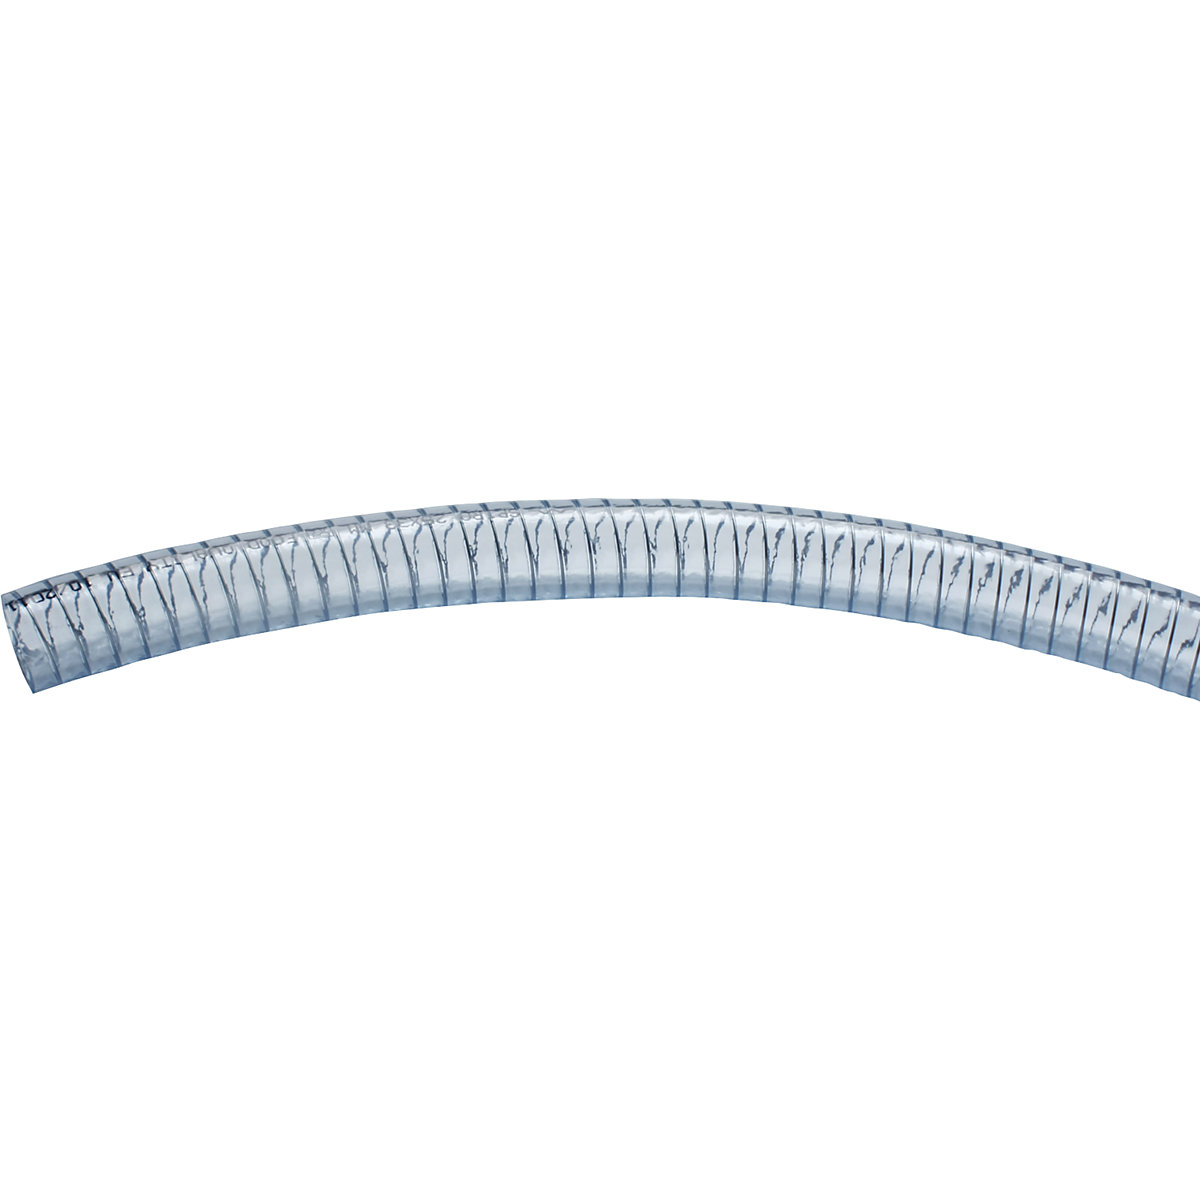 Tubo flessibile in PVC, trasparente con spirale in acciaio – Jessberger